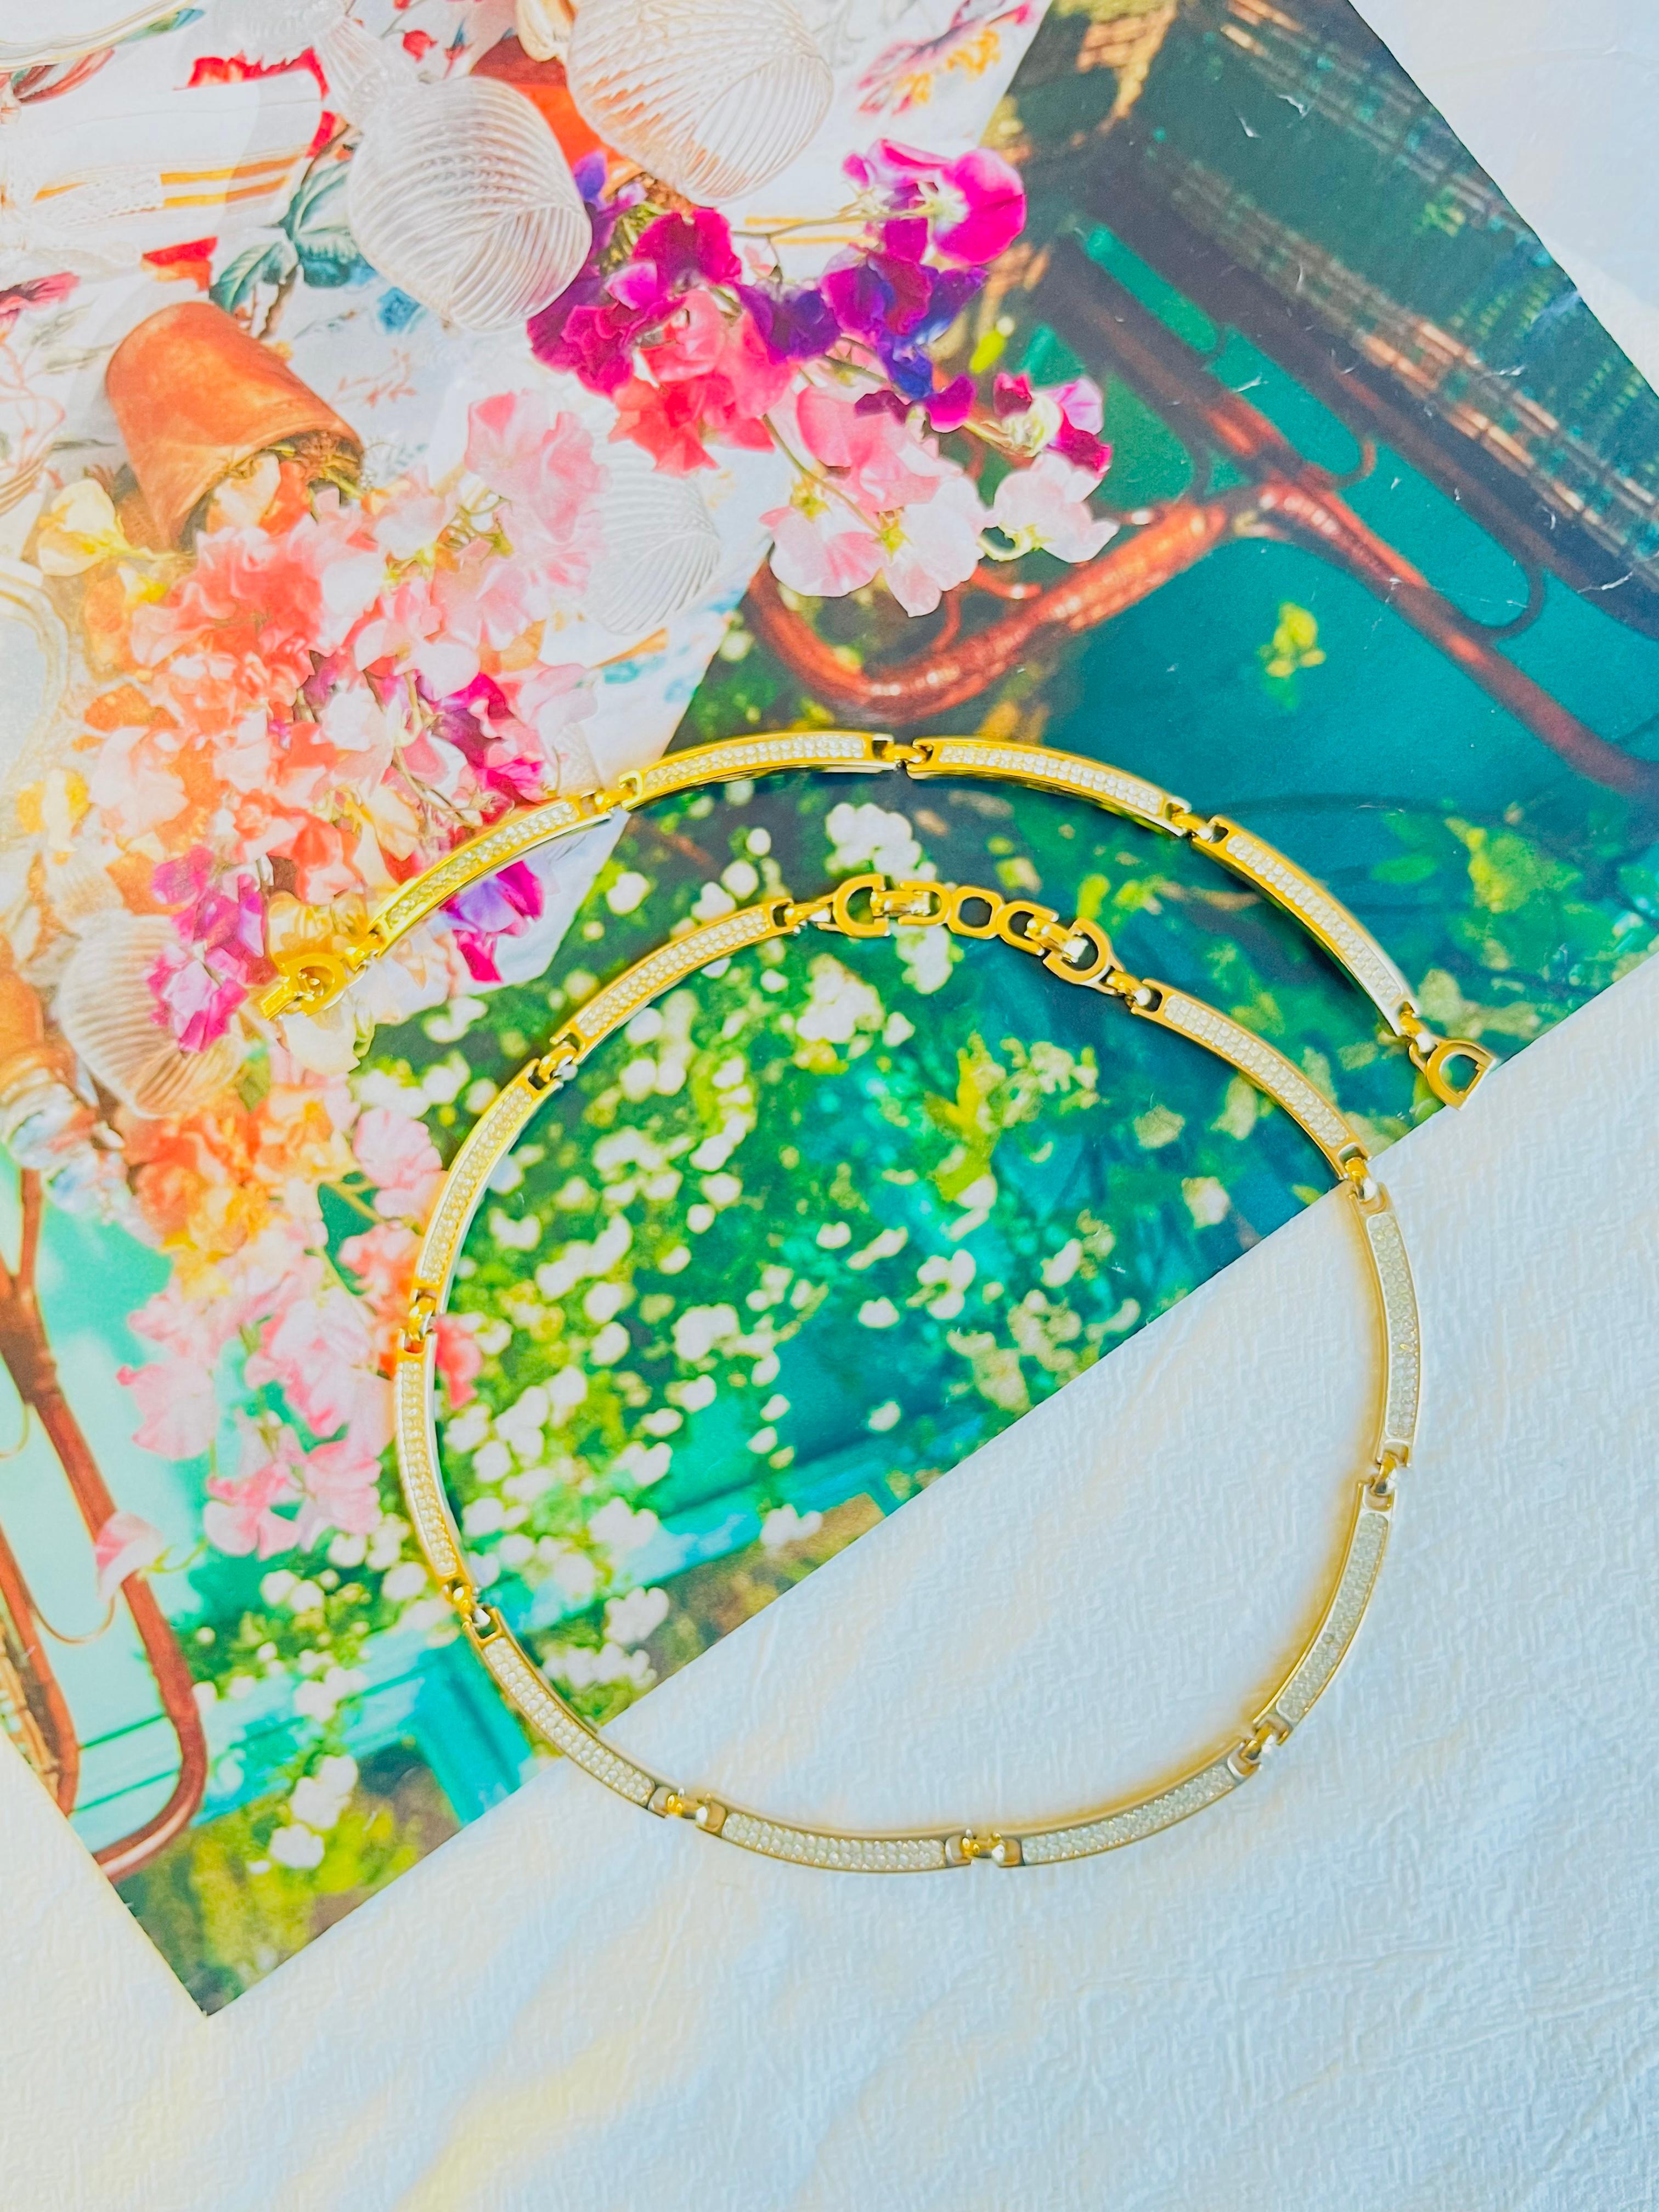 Christian Dior Vintage 1980s Unisex ganze Kristalle Interlink Choker Kragen Halskette Armband Schmuck Set, Gold Tone

Sehr guter Zustand. Vielleicht ein paar leichte Kratzer, kein Farbverlust. Keine Strass-Steine verloren. 100% echt. 

Signiert